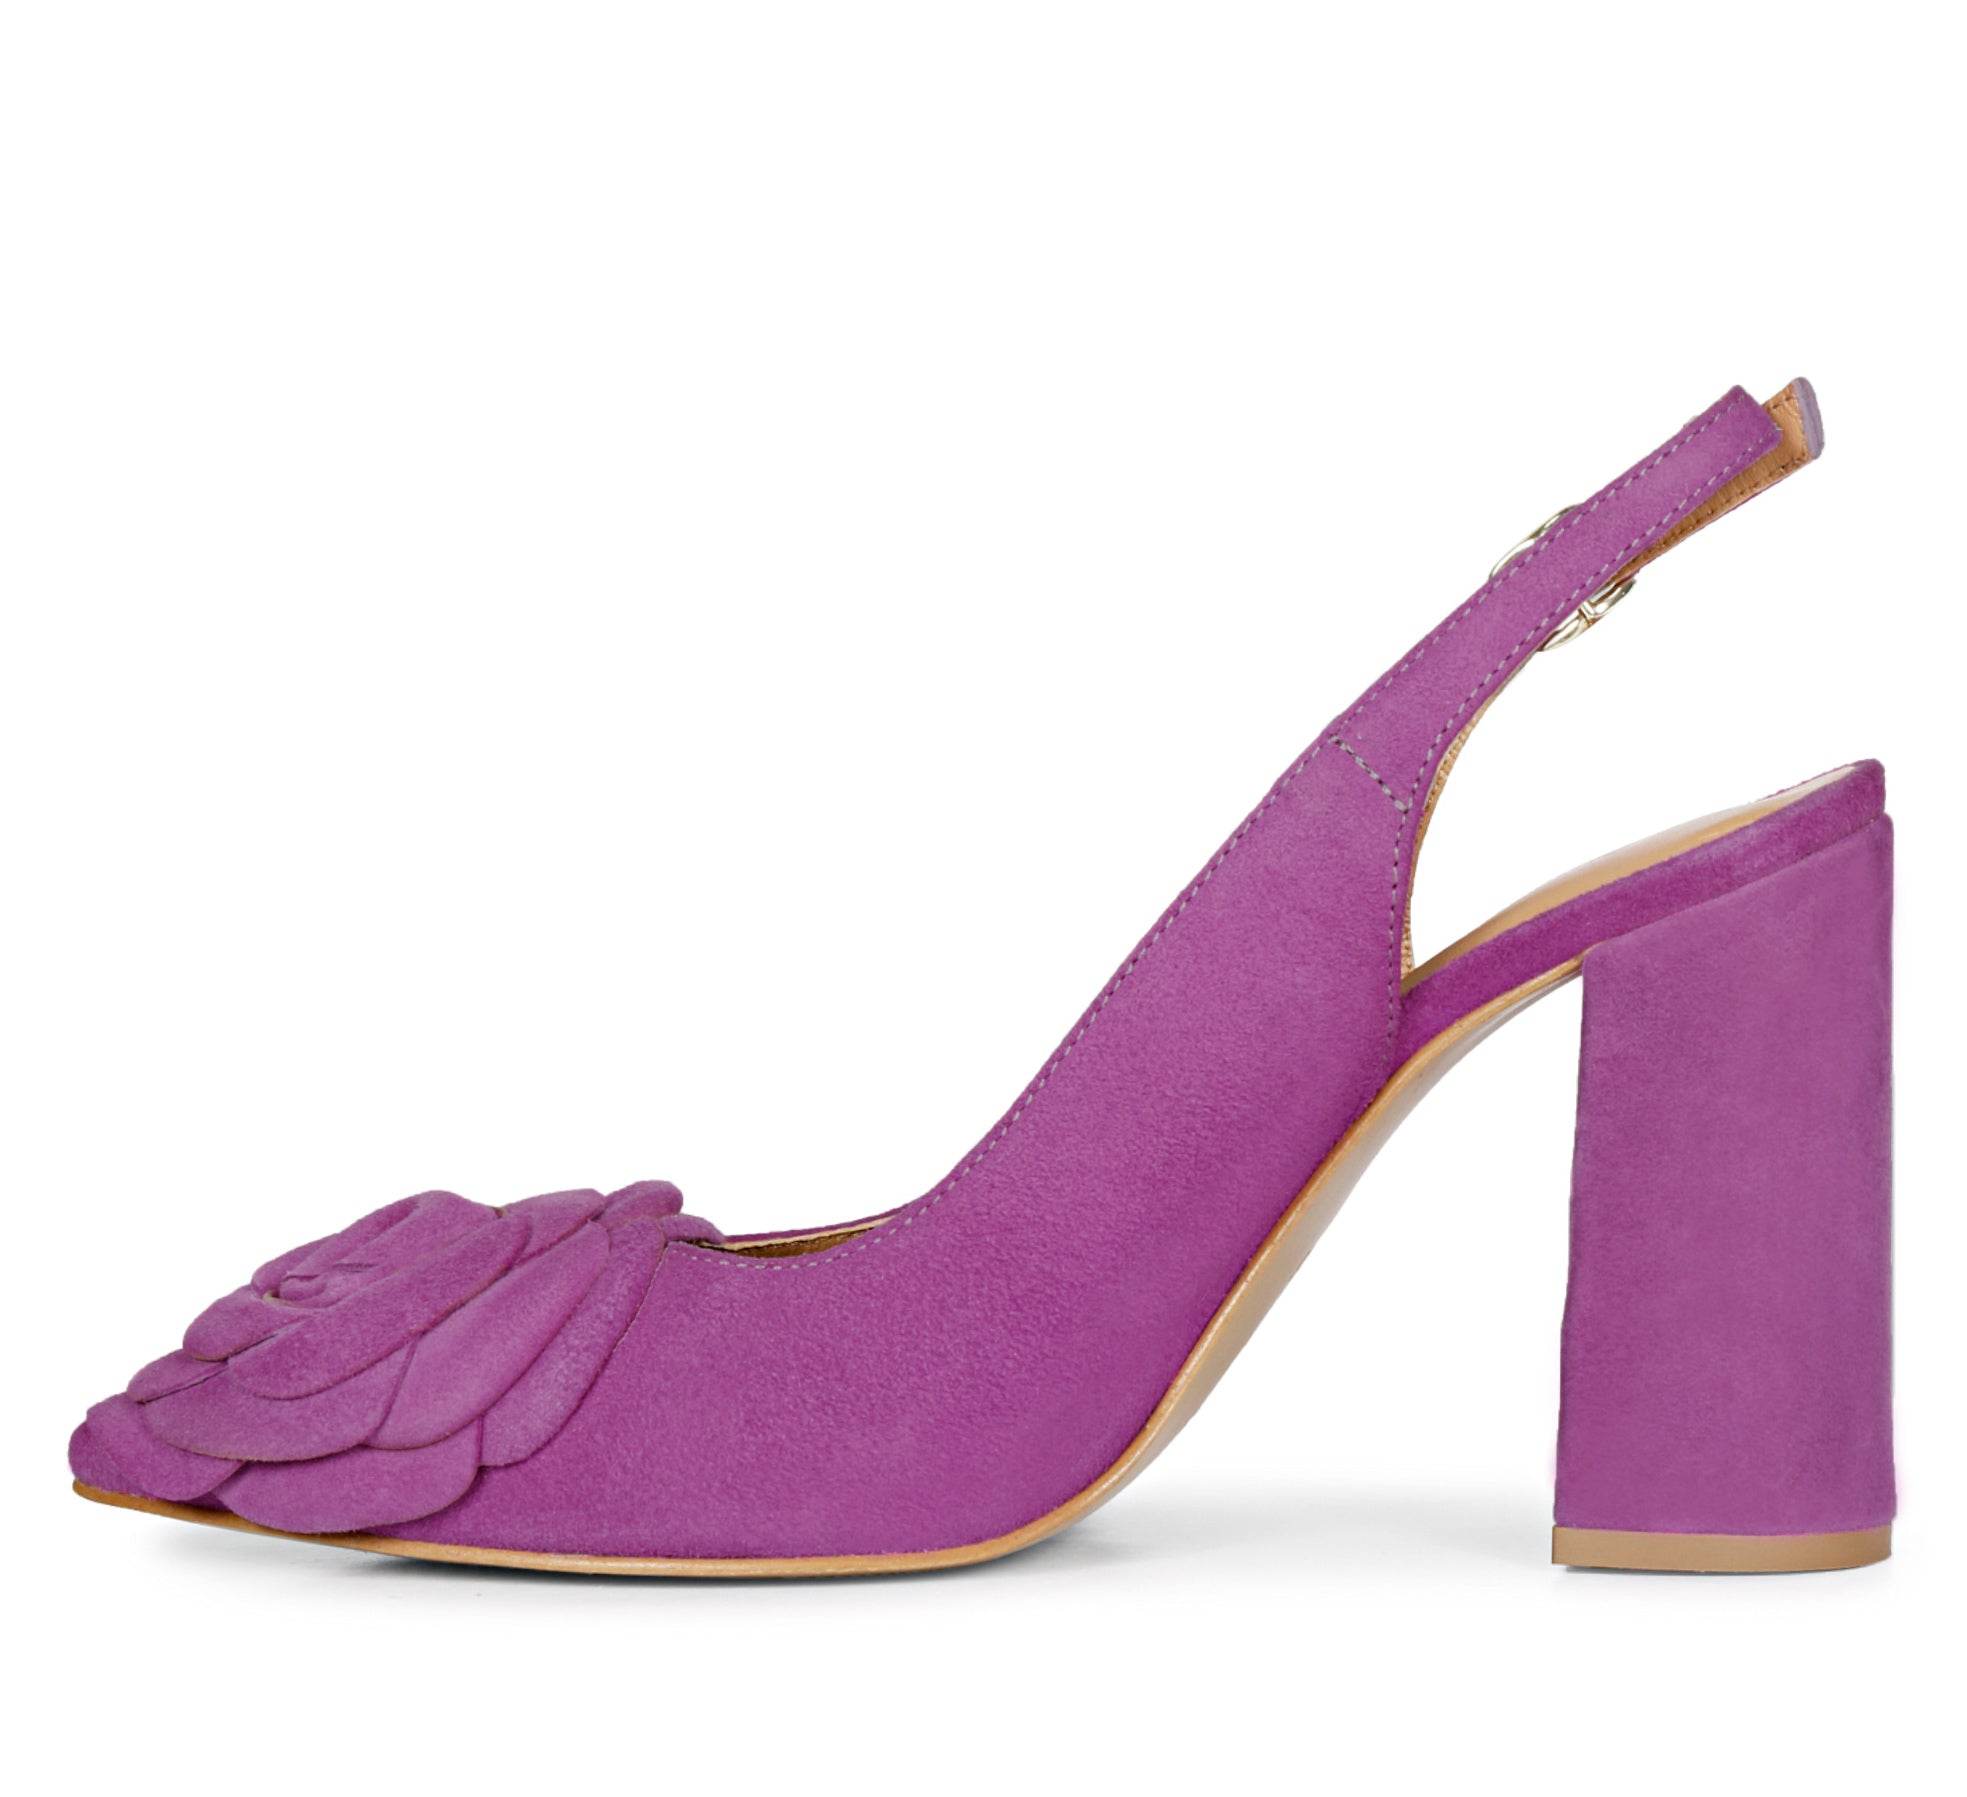 Nine West Astoria 9X9 Purple Block-Heel Pumps, Women's Fashion, Footwear,  Heels on Carousell